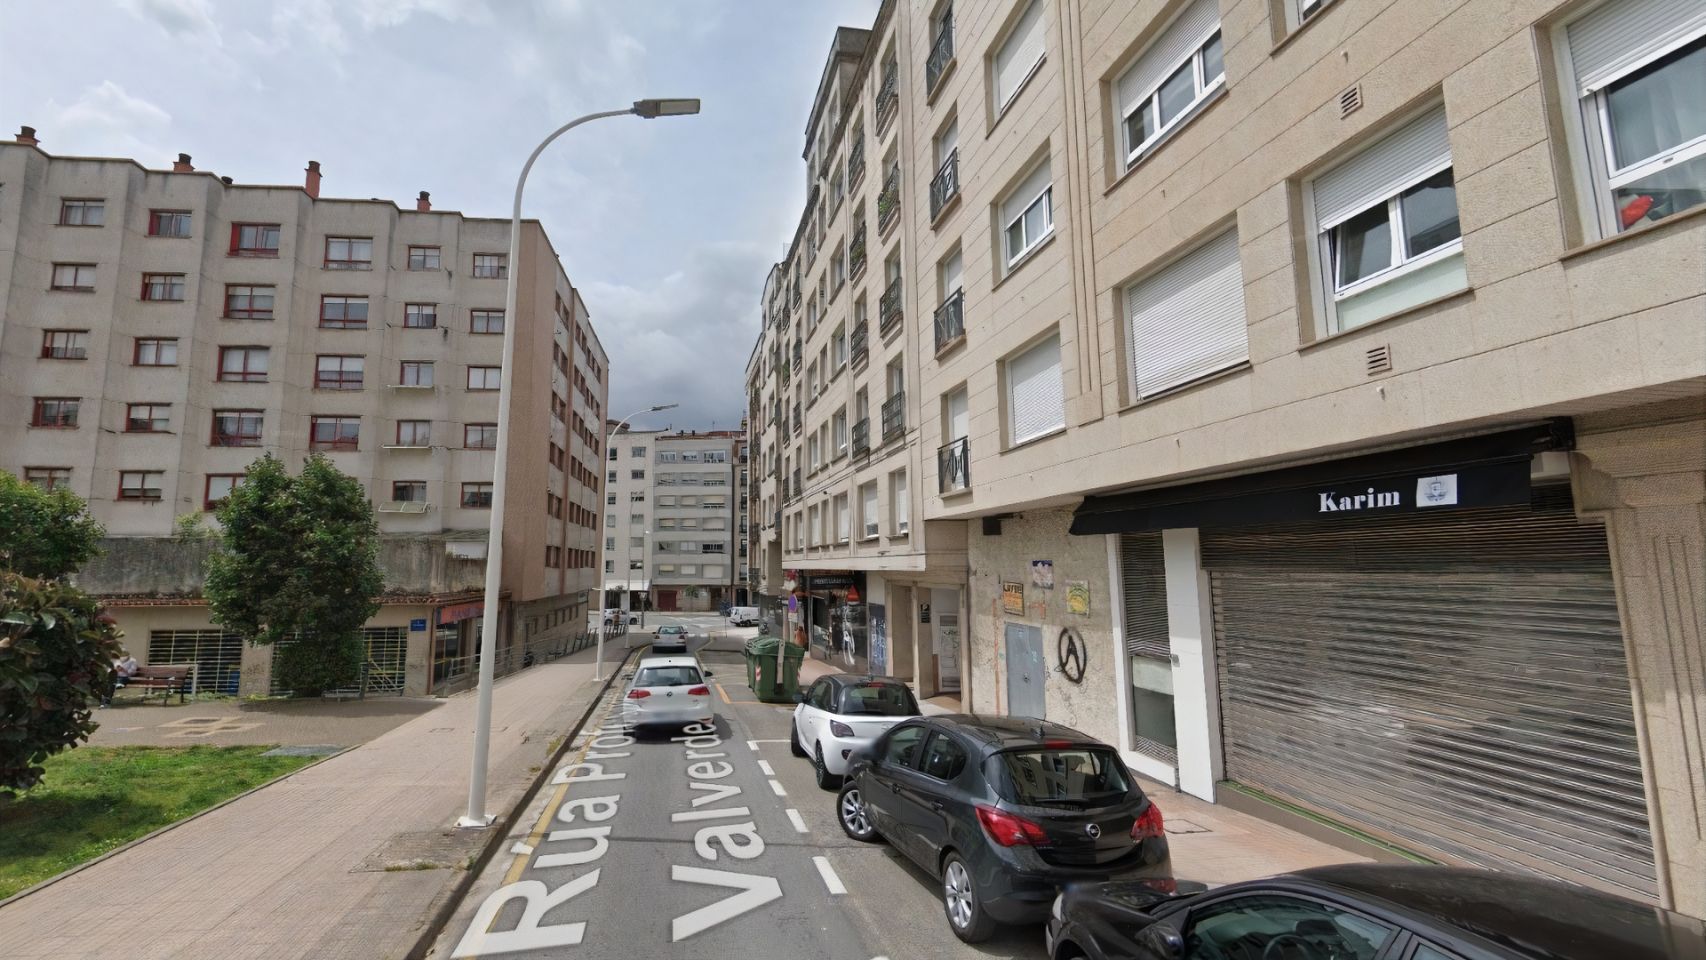 Los hechos ocurrieron en la calle Profesor Filgueira Valverde de Pontevedra.